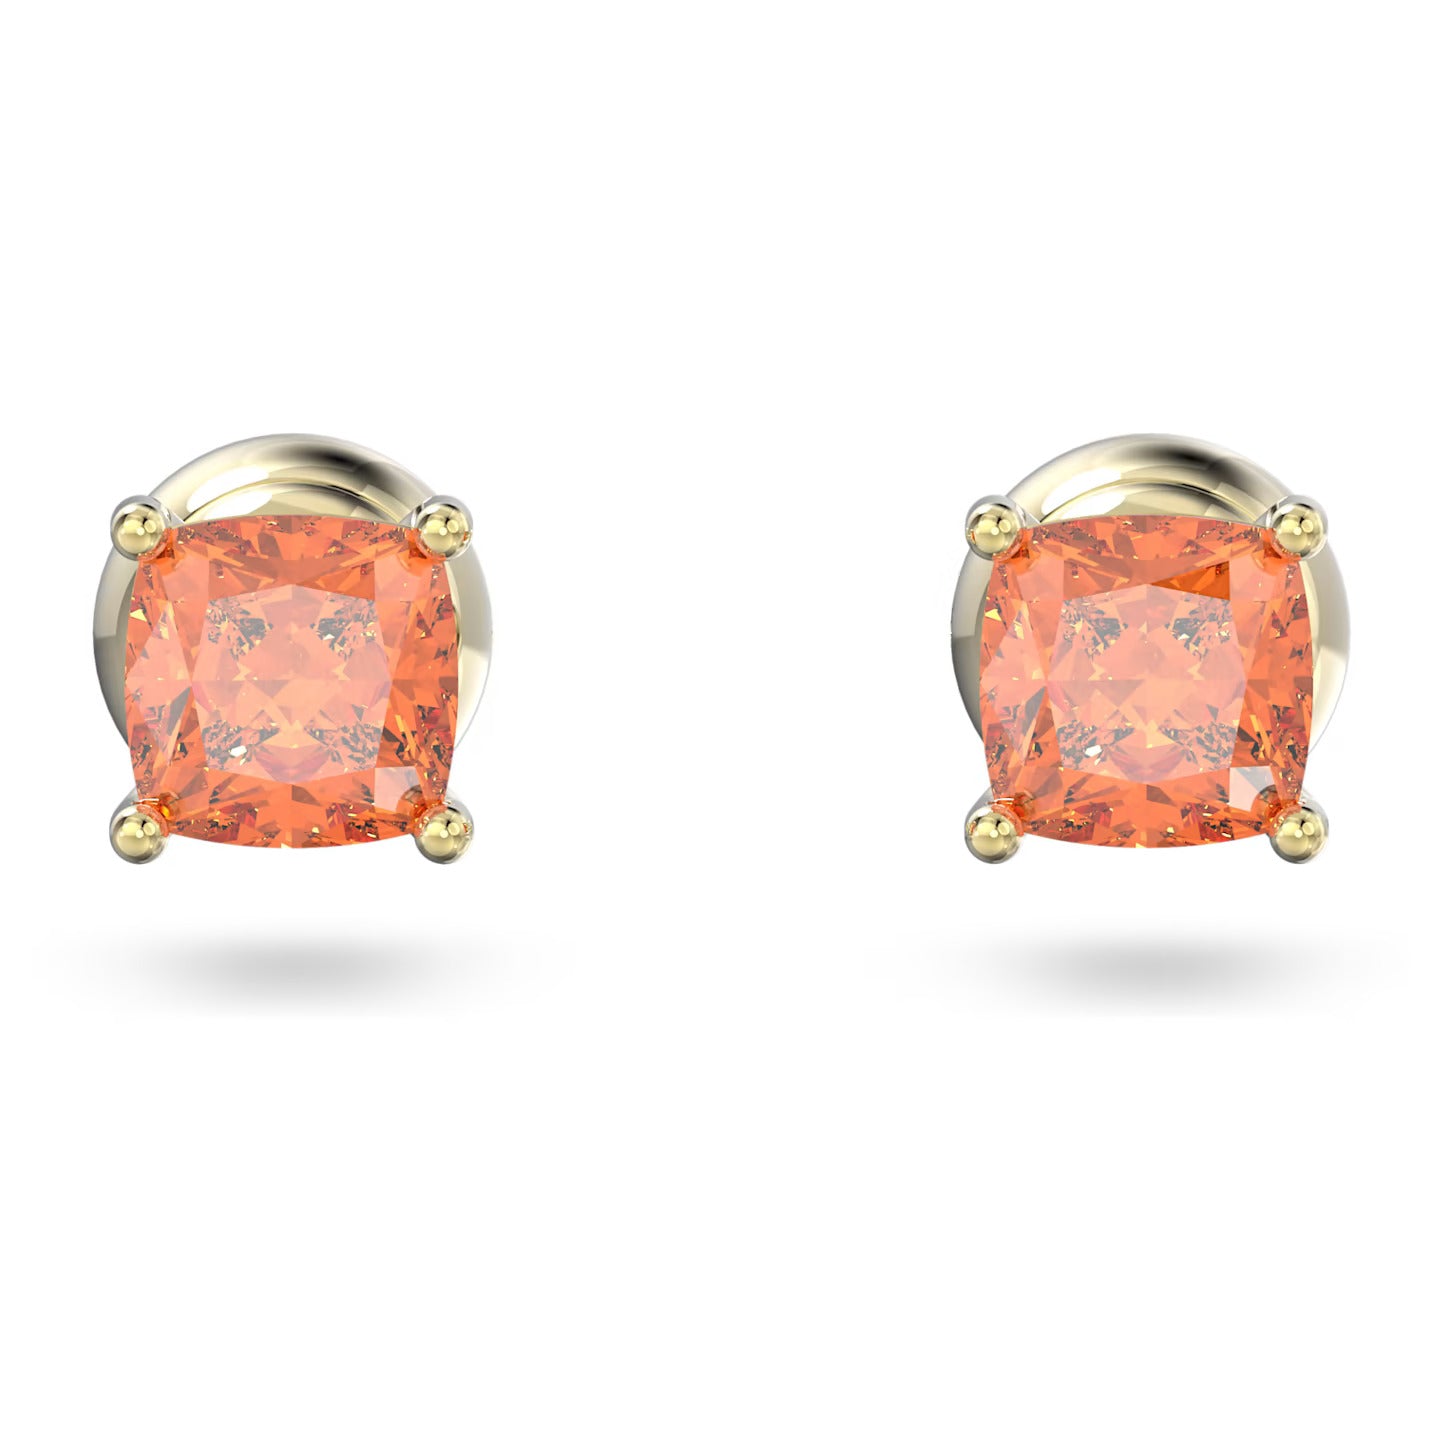 Stilla - Golden Orange - Earrings - Swarovski